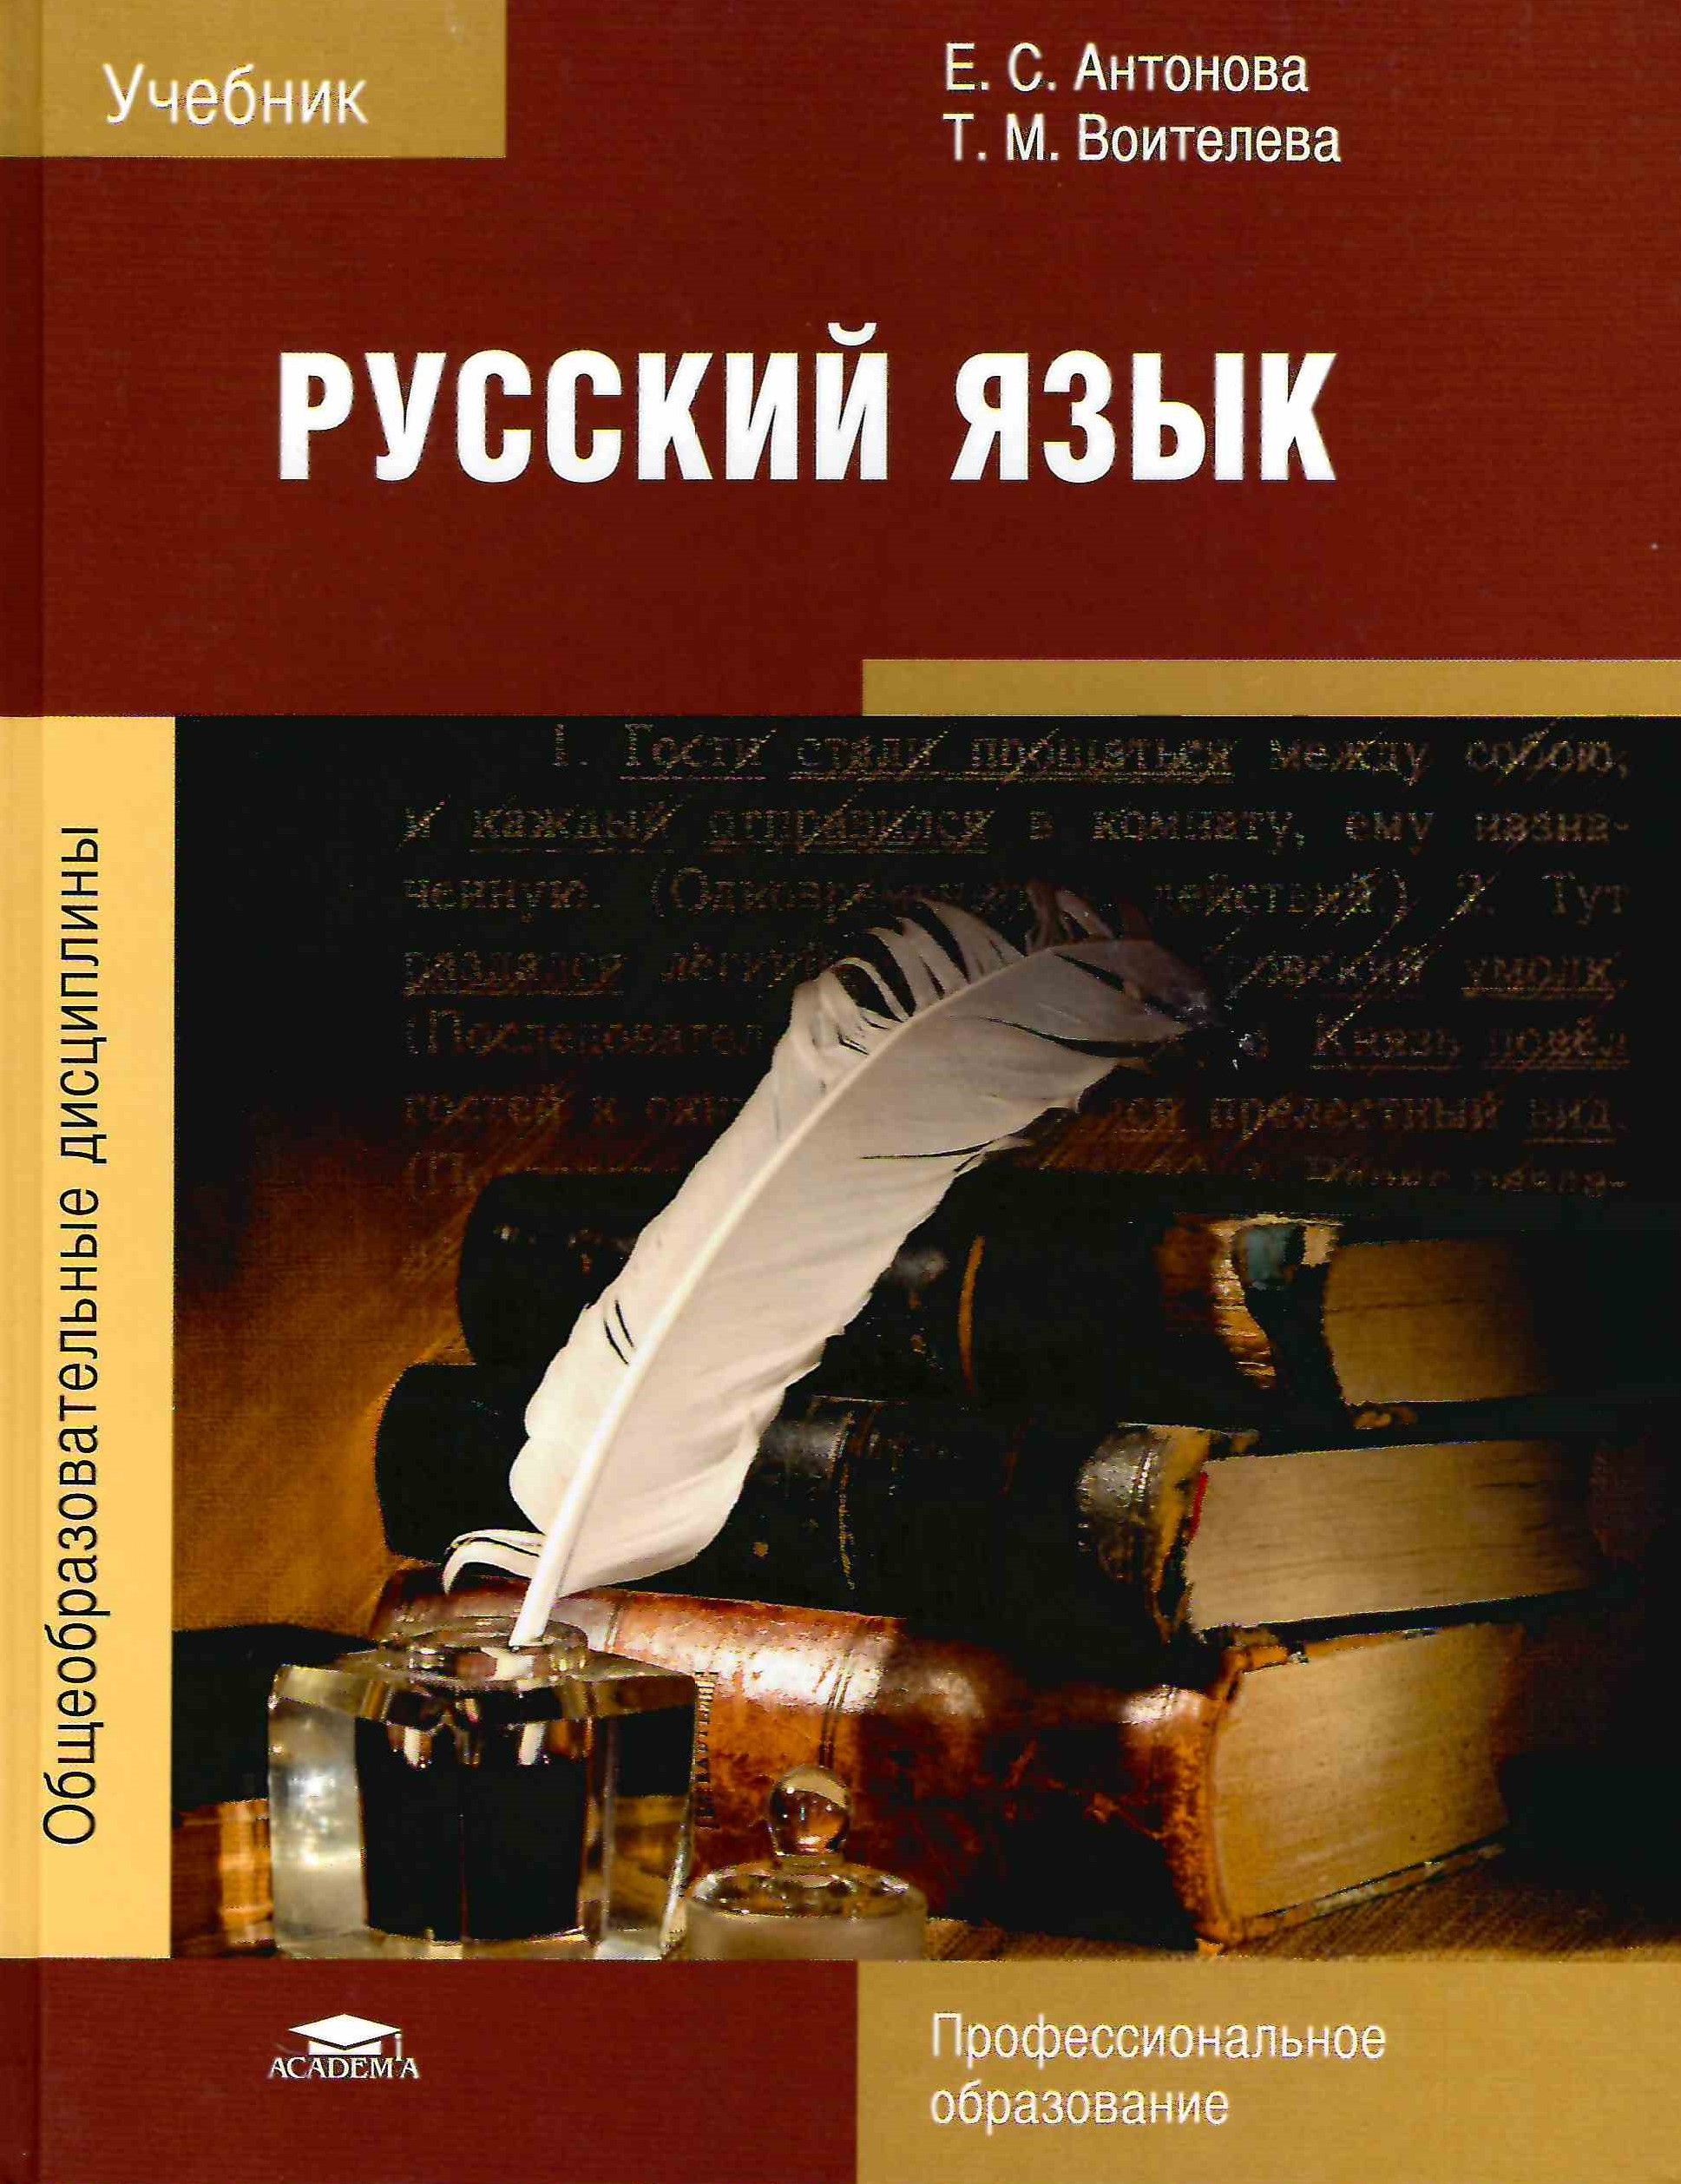 Учебник русского языка для начинающих